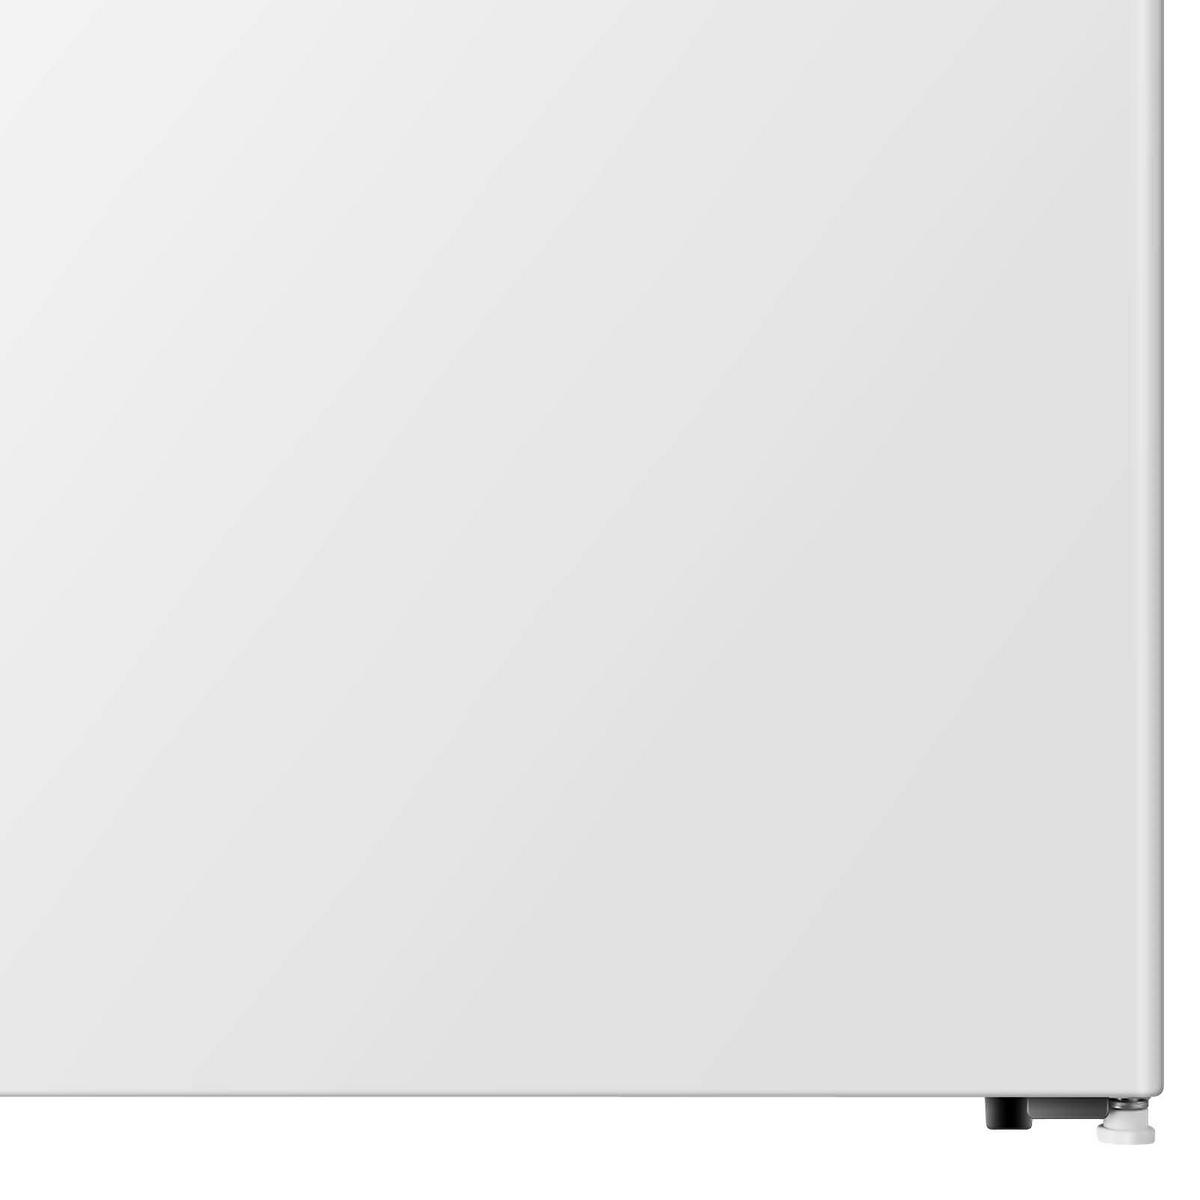 Minikühlschränke online kaufen ab 119,99 EUR